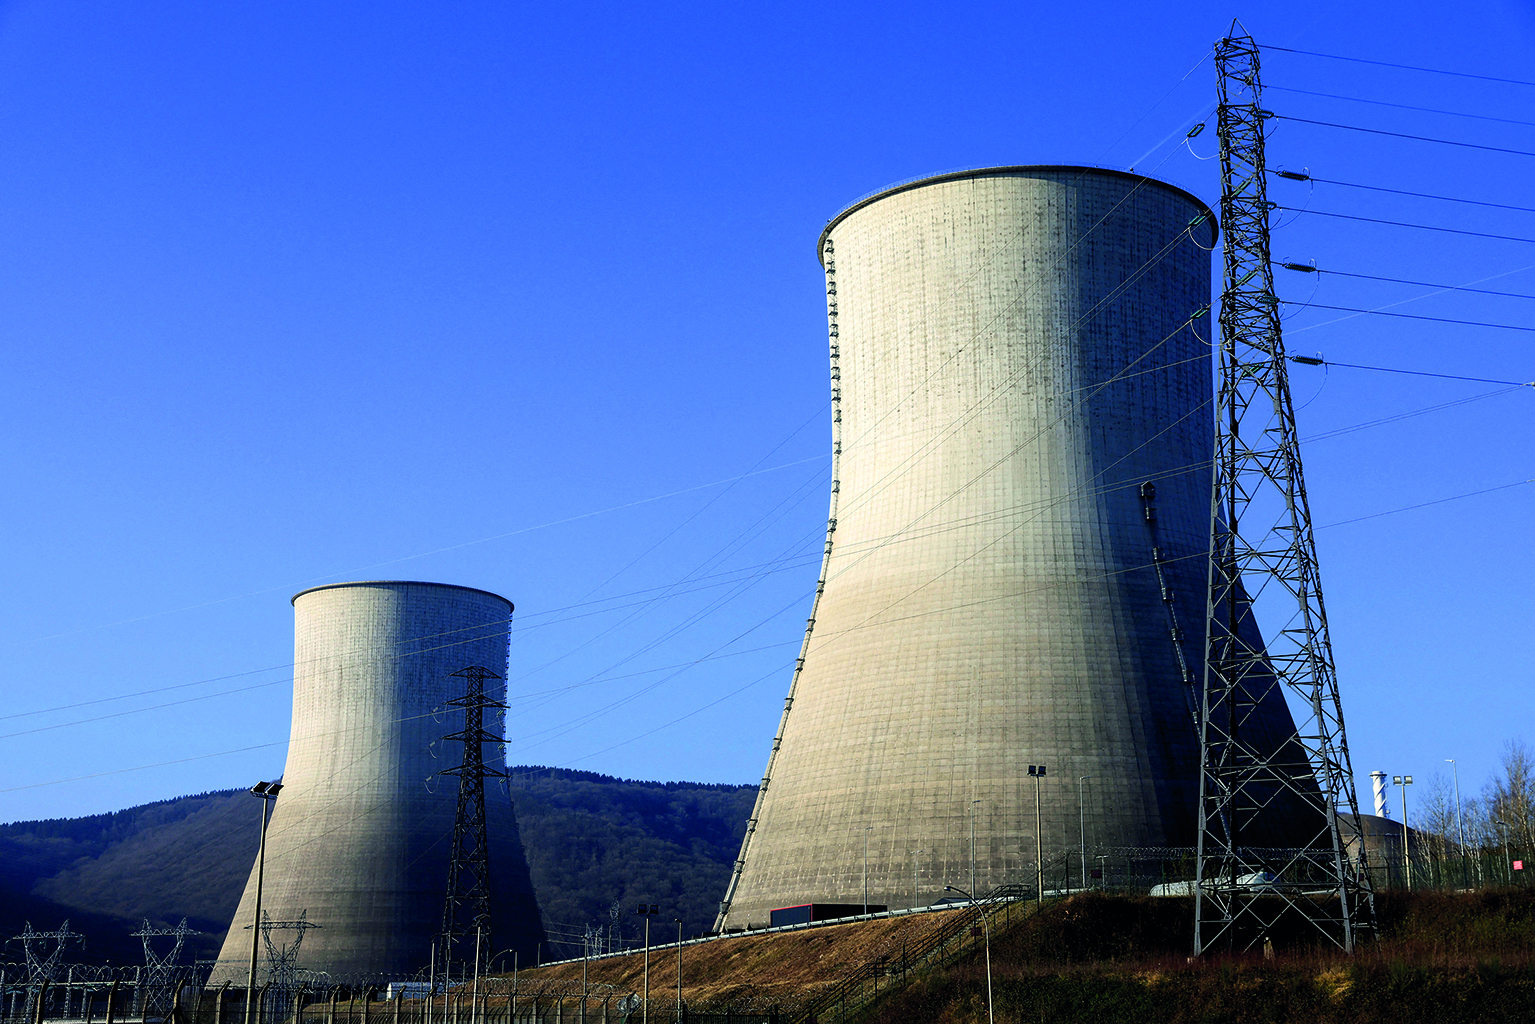 Fotografia. Destaque para duas torres de resfriamento de usinas nucleares sobre uma superfície inclinada. Ao lado direito, há uma torre de eletricidade. Ao fundo, montanha e acima, céu azul.